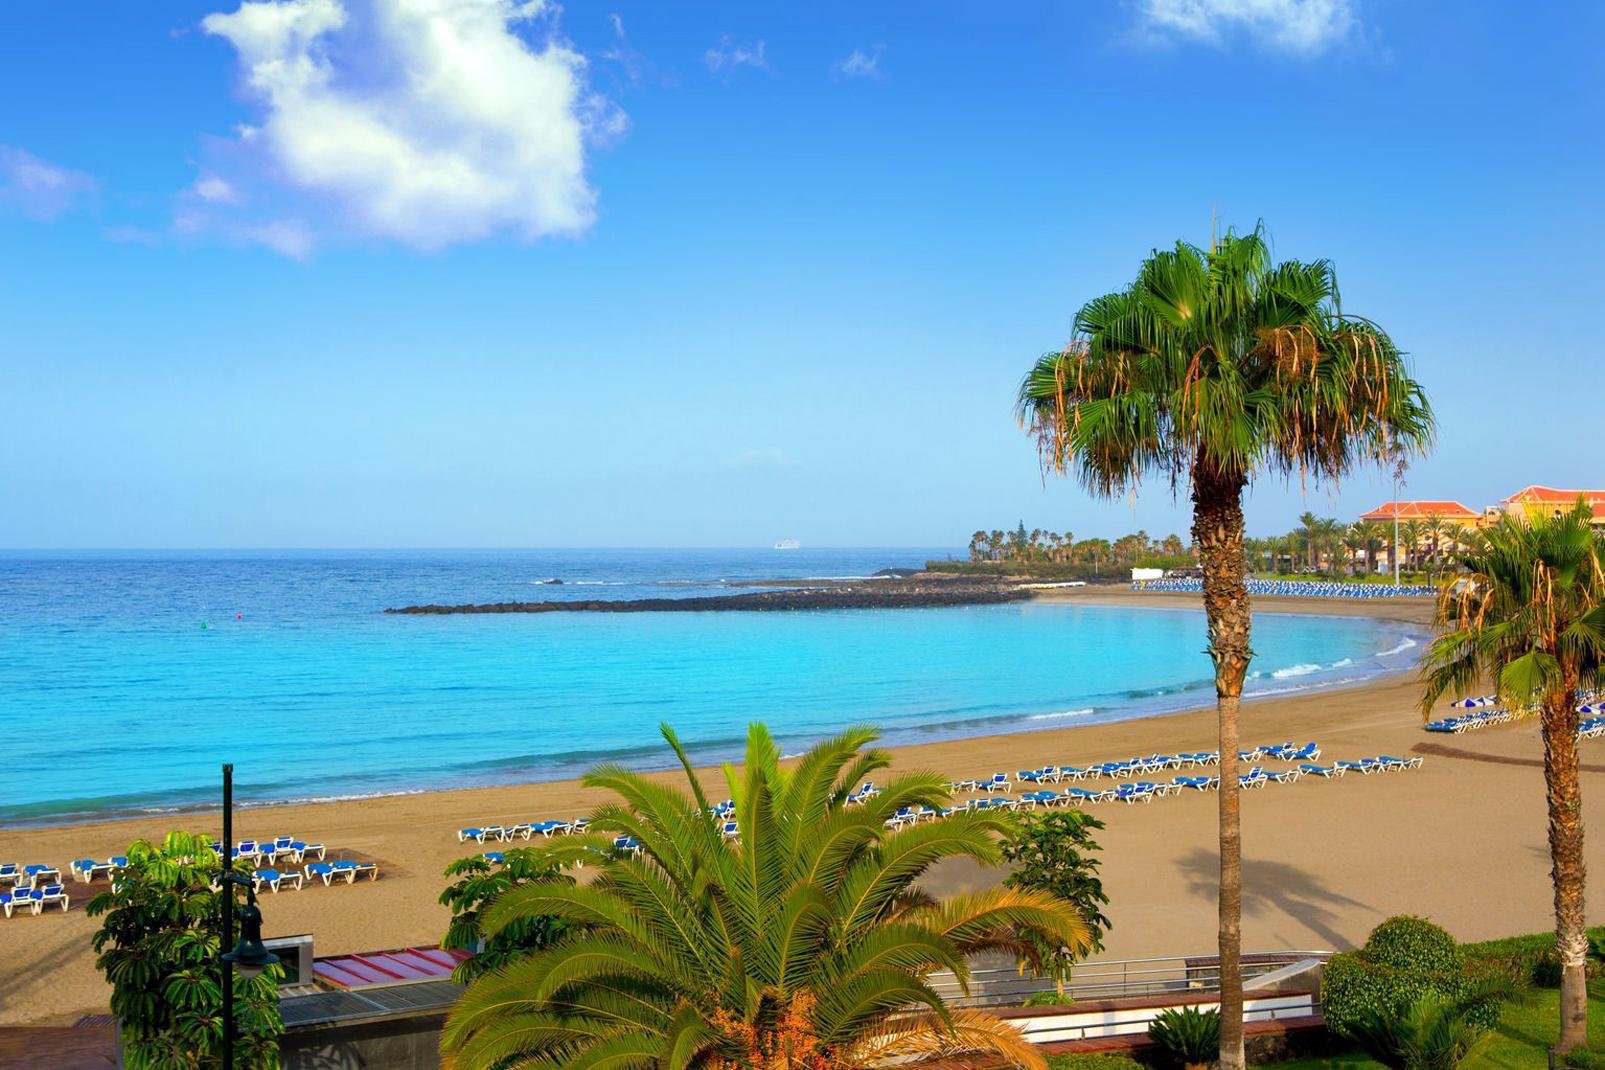 Costa Adeje es un nuevo núcleo turístico en el sur de Tenerife, justo al lado de Playa de las Américas. Se trata de la zona más exclusiva del municipio donde la mayoría de los resorts 5 estrellas decidieron establecerse. Incluye las playas de Fanabe, del Duque y de la Caleta. Se sitúa aproximadamente a unos 25 kilómetros del aeropuerto Sur de Tenerife y cuenta con un sinfín de tiendas y bares. En invierno ...